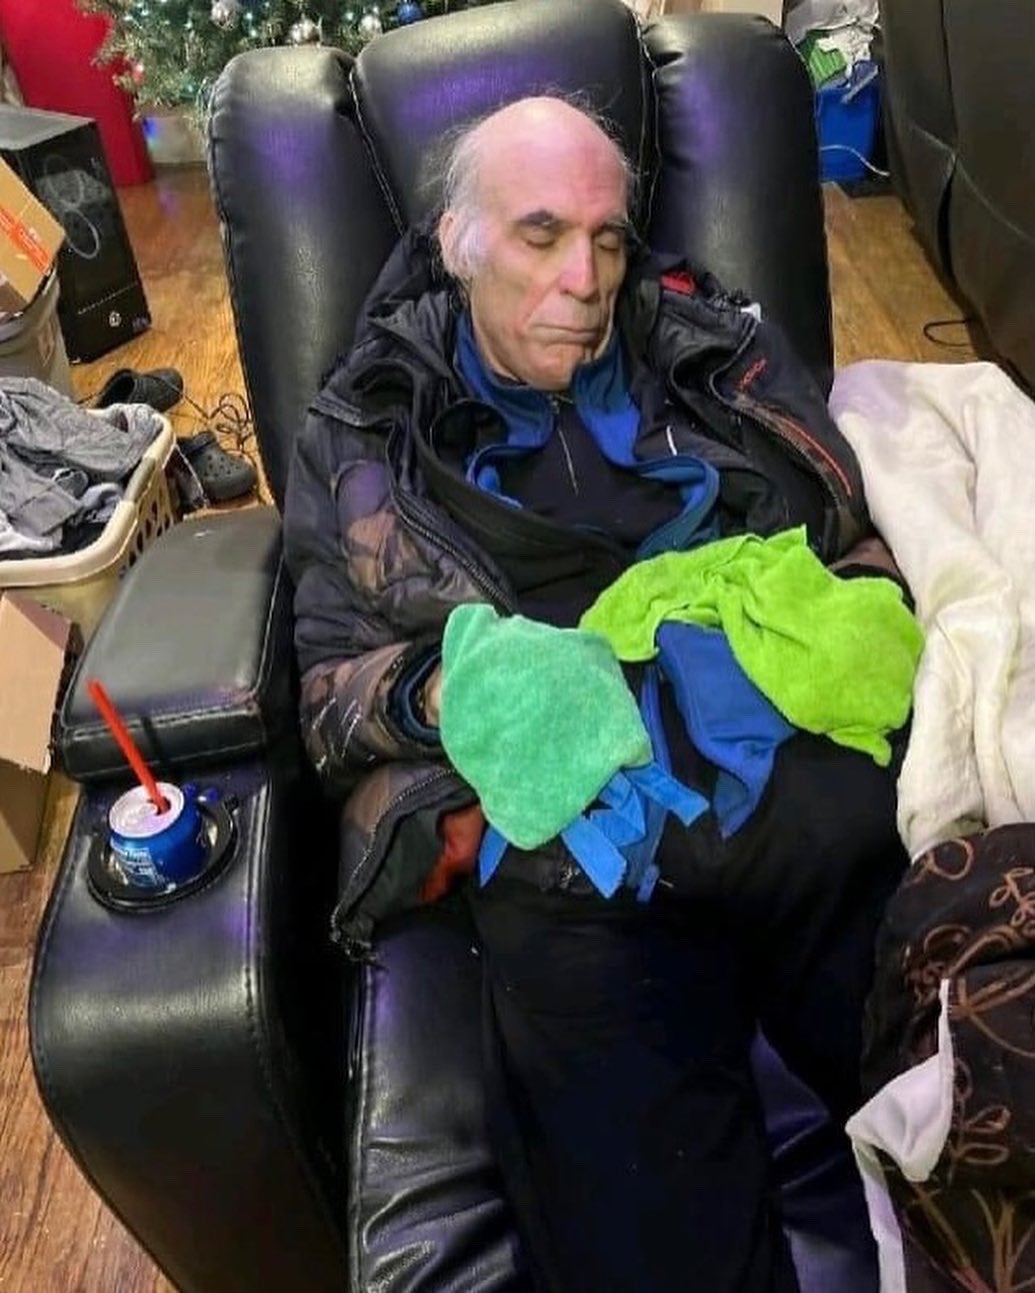 Joe White sufrió quemaduras graves en las manos por congelación tras perderse durante la tormenta en Buffalo